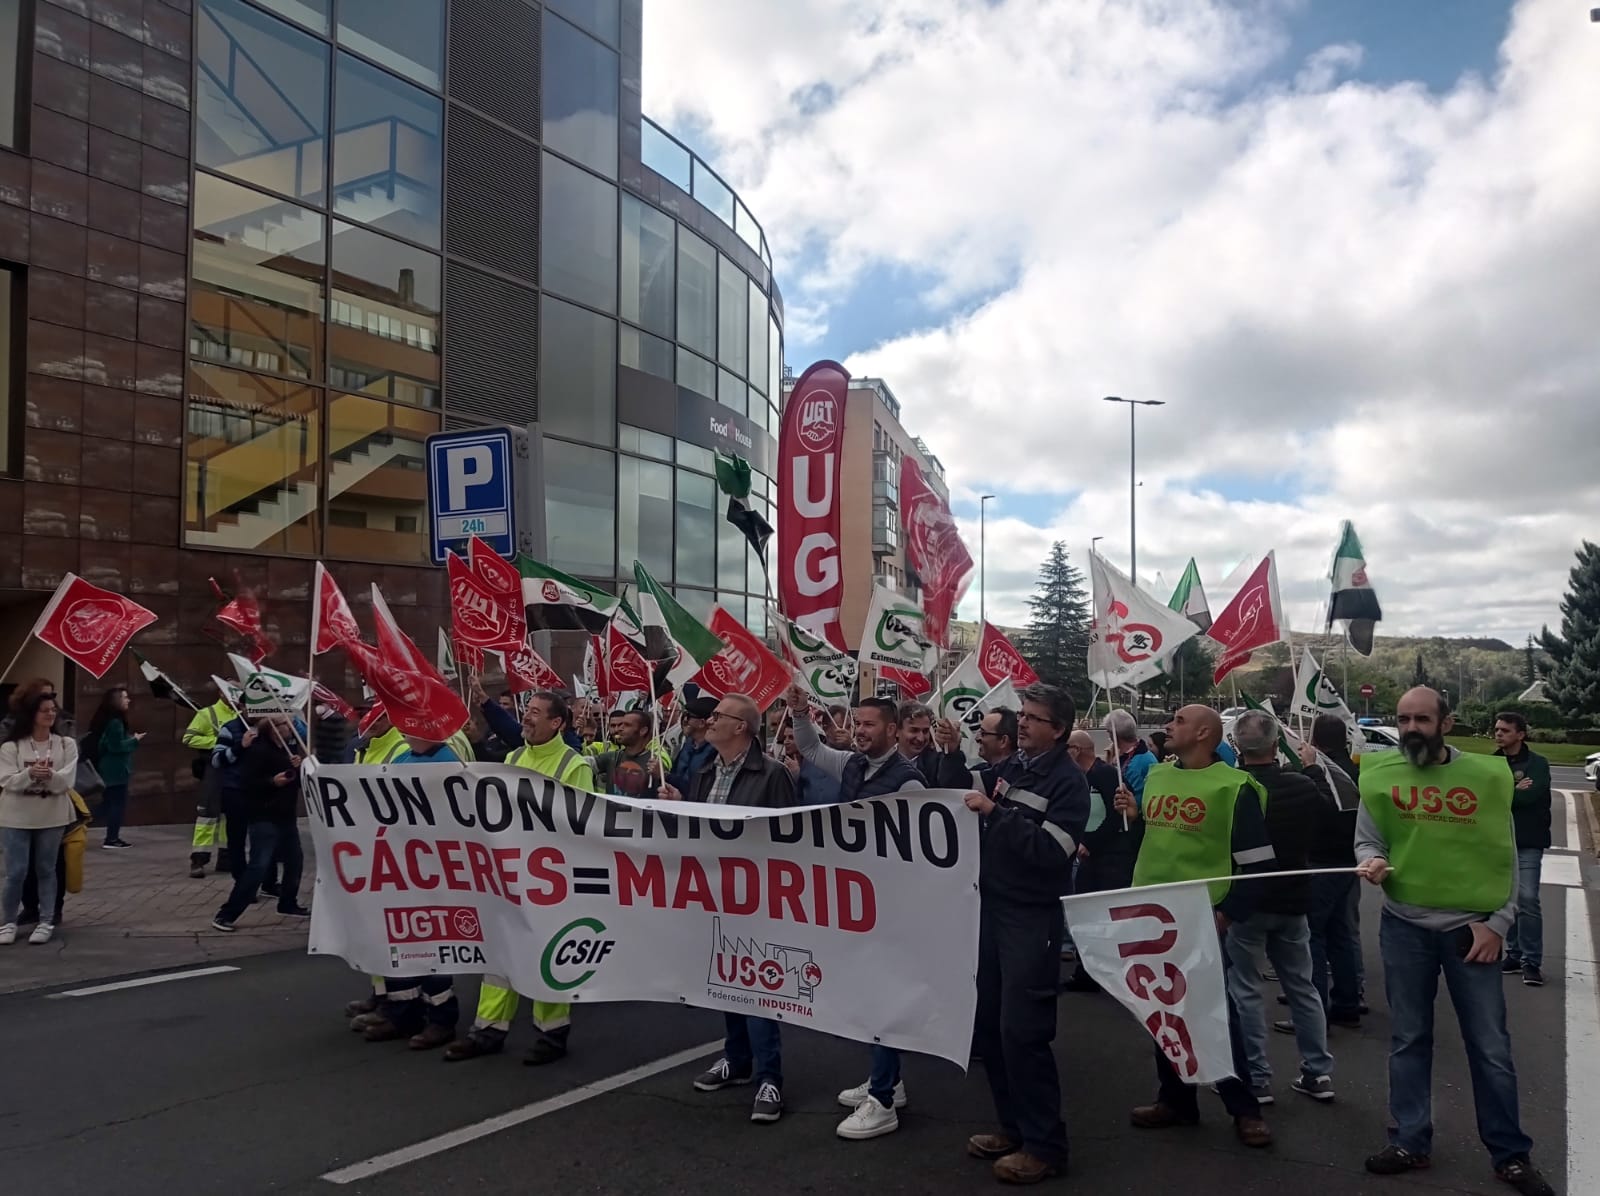 Los Trabajadores de Canal de Isabel II en Cáceres reivindican un Convenio Digno